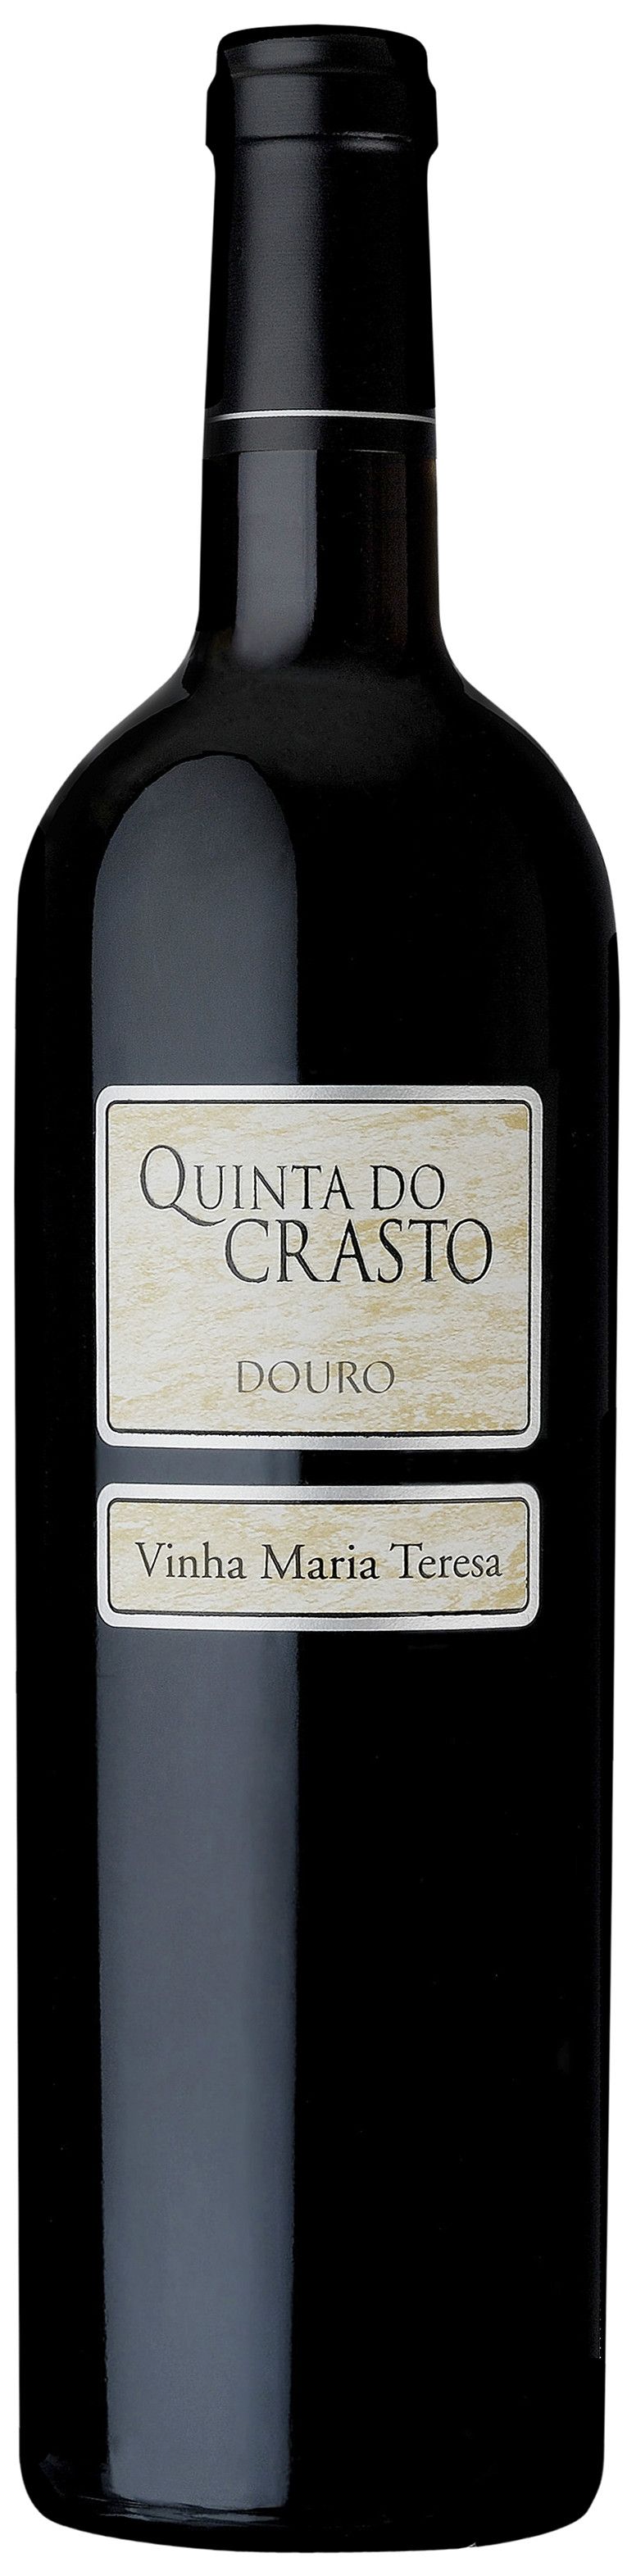 Quinta Do Crasto, Vinha Maria Teresa, 2011